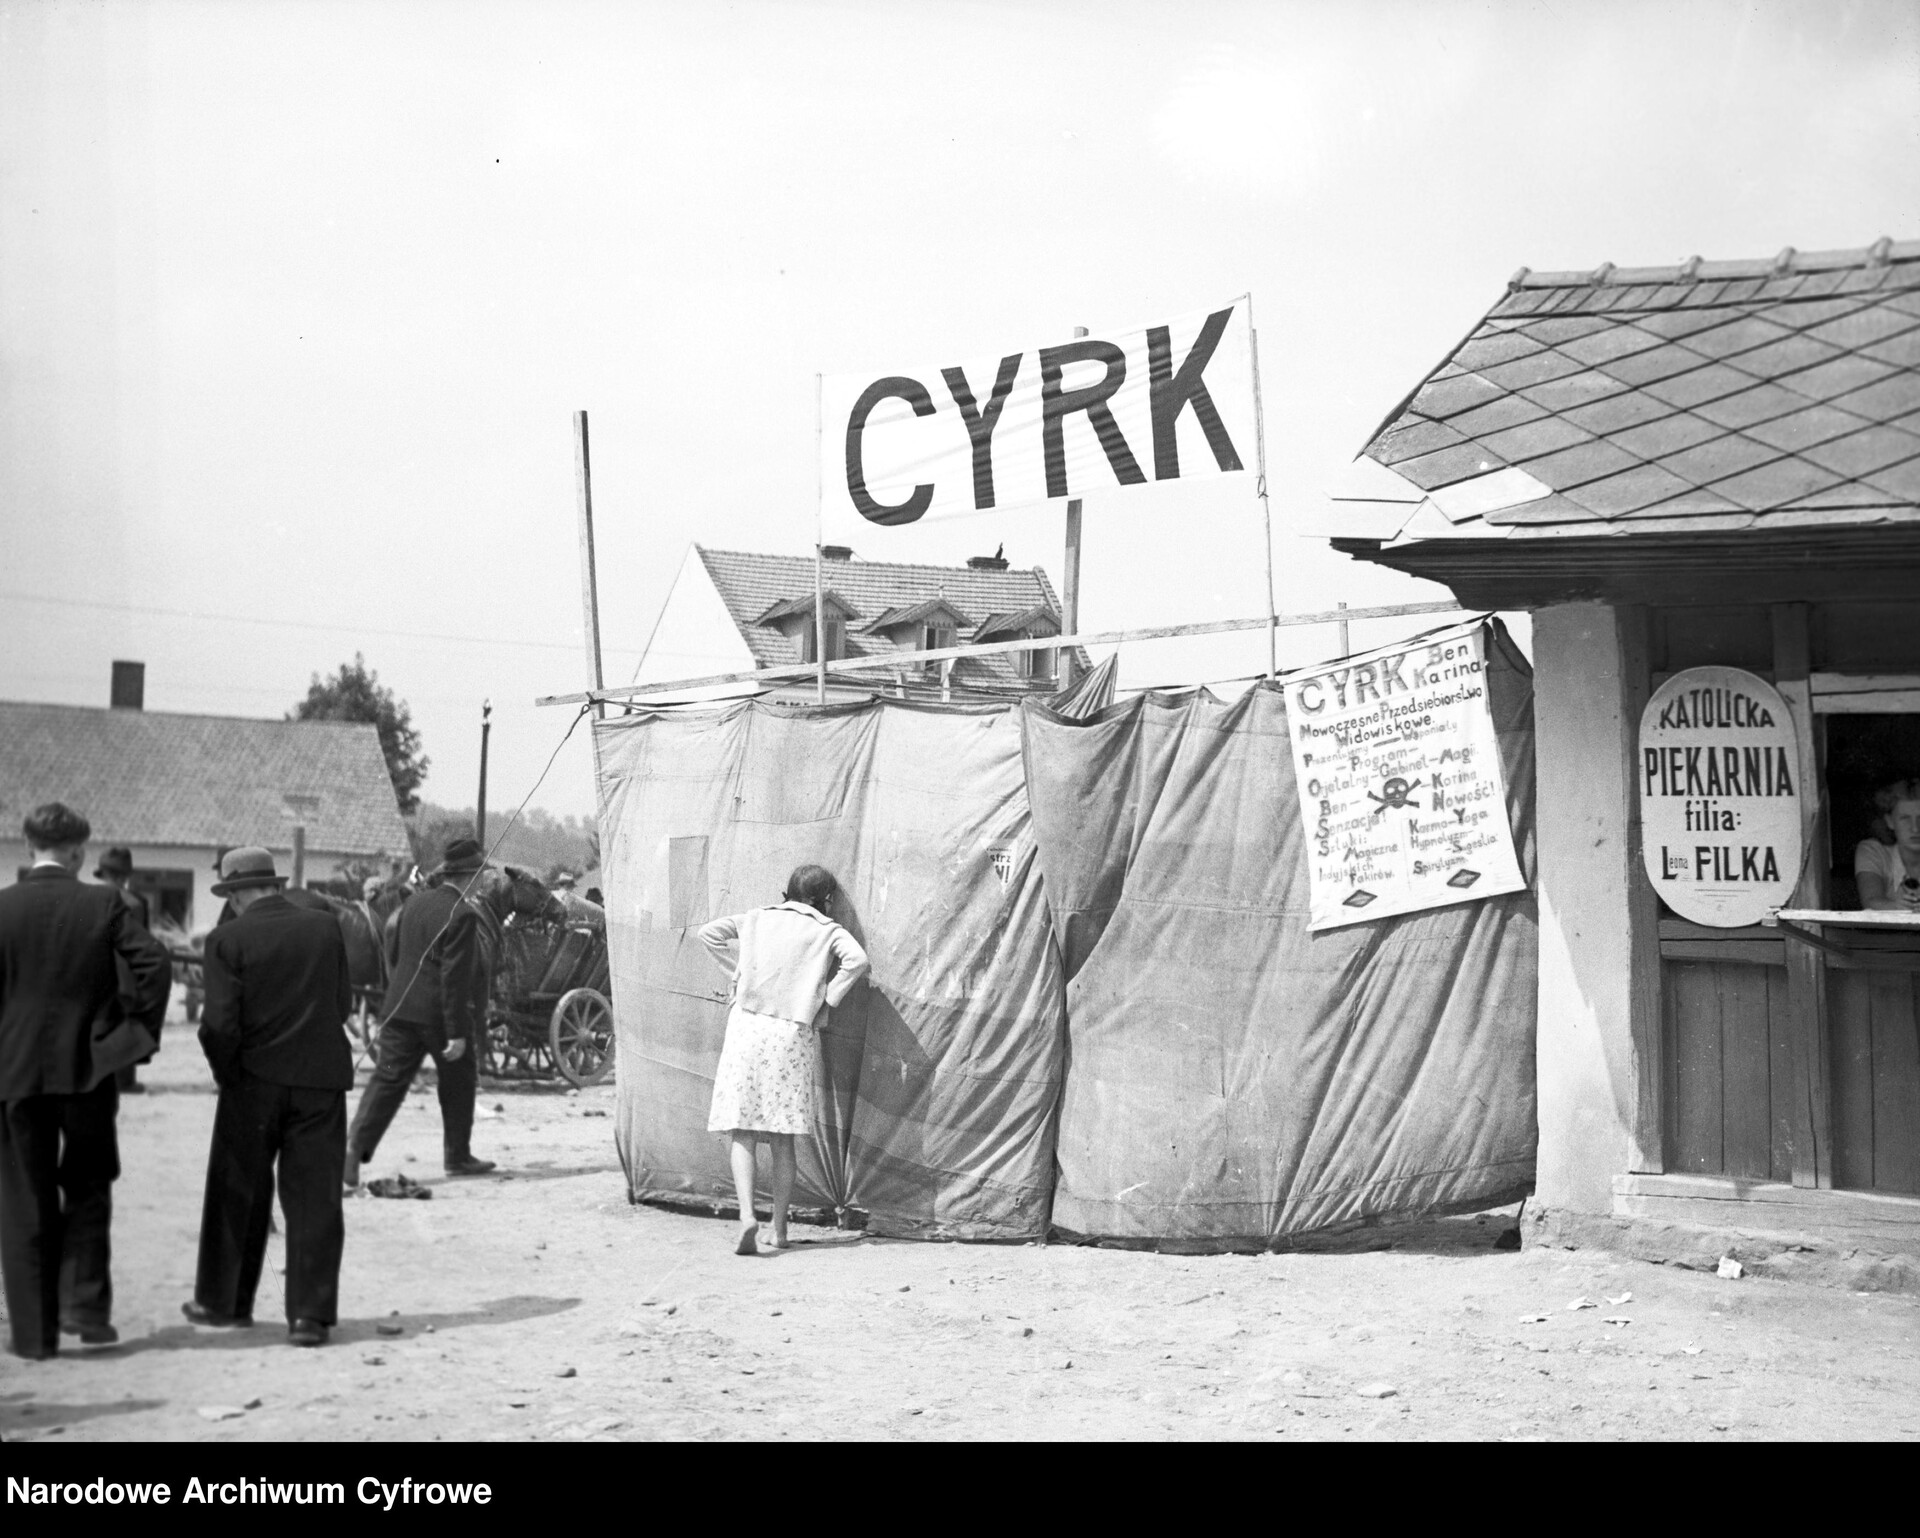  Czarno-białe zdjęcie z lat 30. przedstawia dziewczynkę zaglądającą do cyrku przez dziurę ogrodzenia wykonanego z materiału. Z boku widoczna jest plansza reklamująca cyrk oraz szyld „katolickiej piekarni”. 